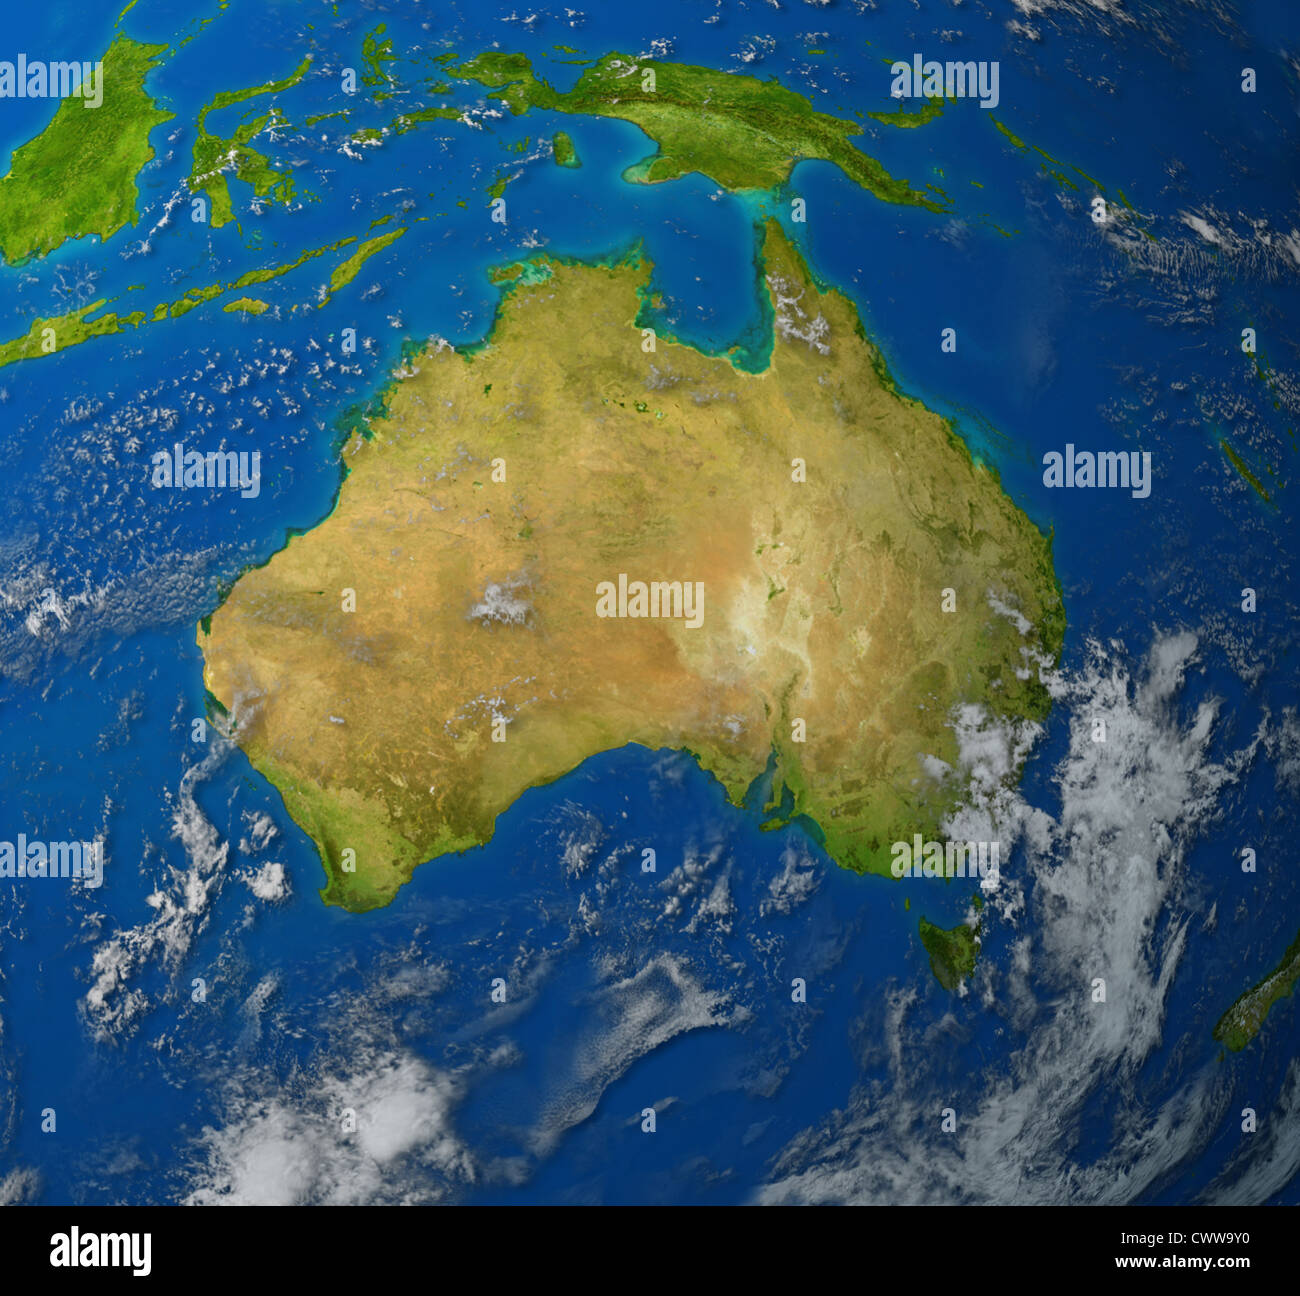 Australien realistische Landkarte des Kontinents von Oceana in der pazifischen Region Asiens repräsentieren die Ozzies und die Aussie-Land. Stockfoto